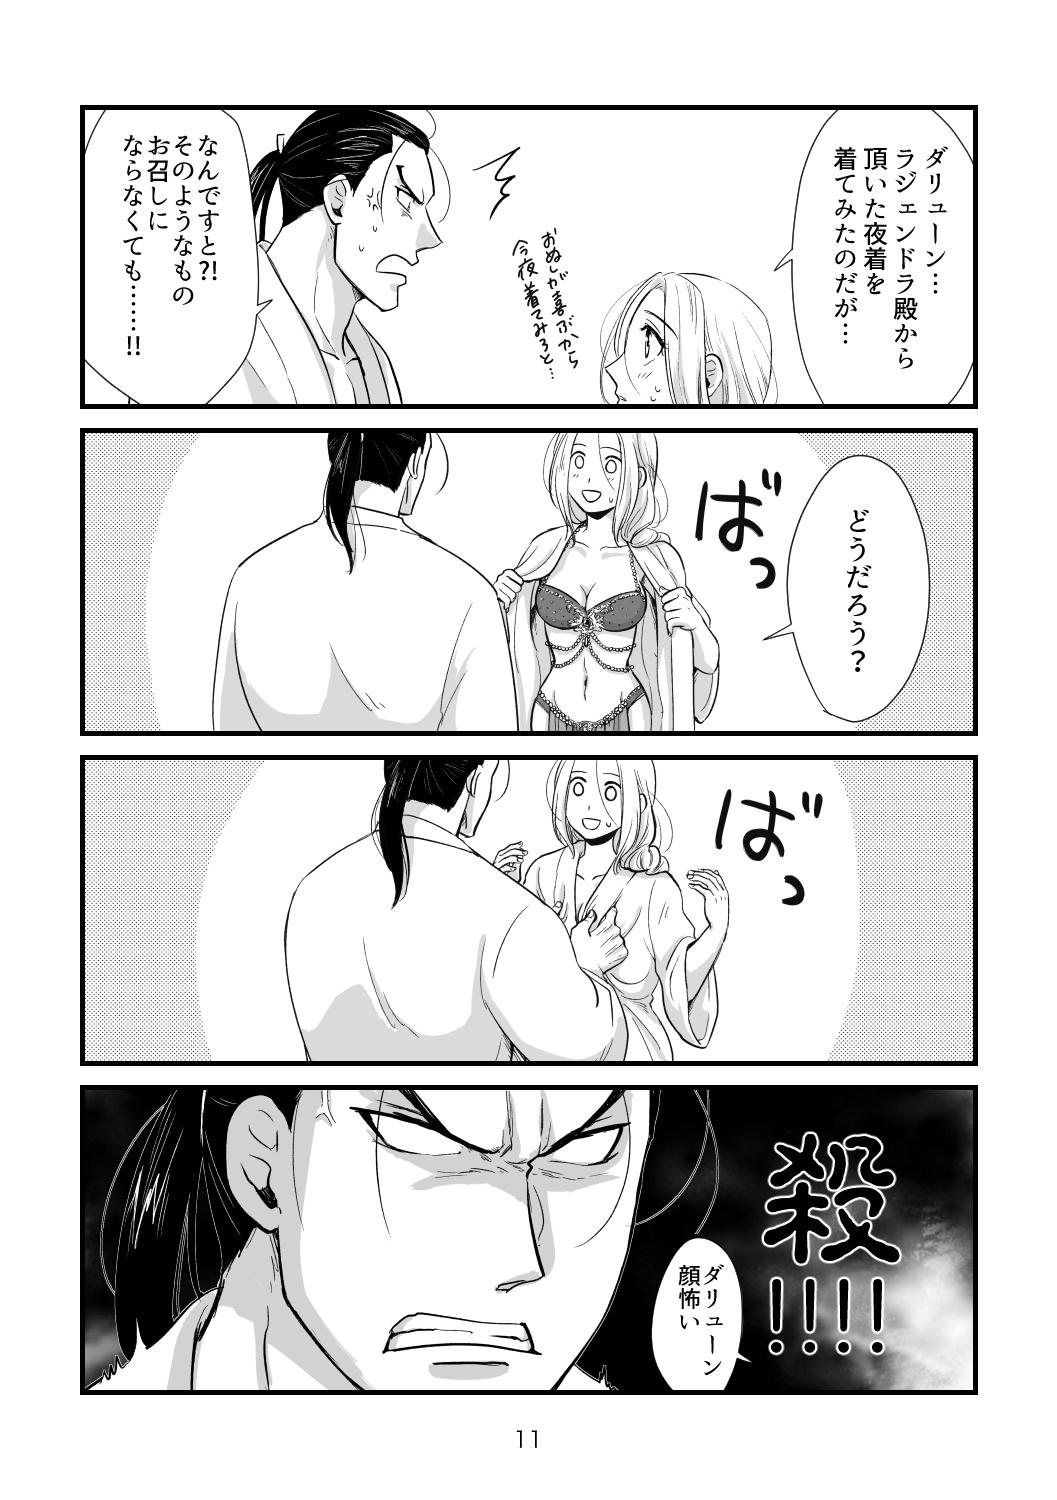 Licking Toaru Fuufu no Ohanashi - Arslan senki Teenies - Page 10